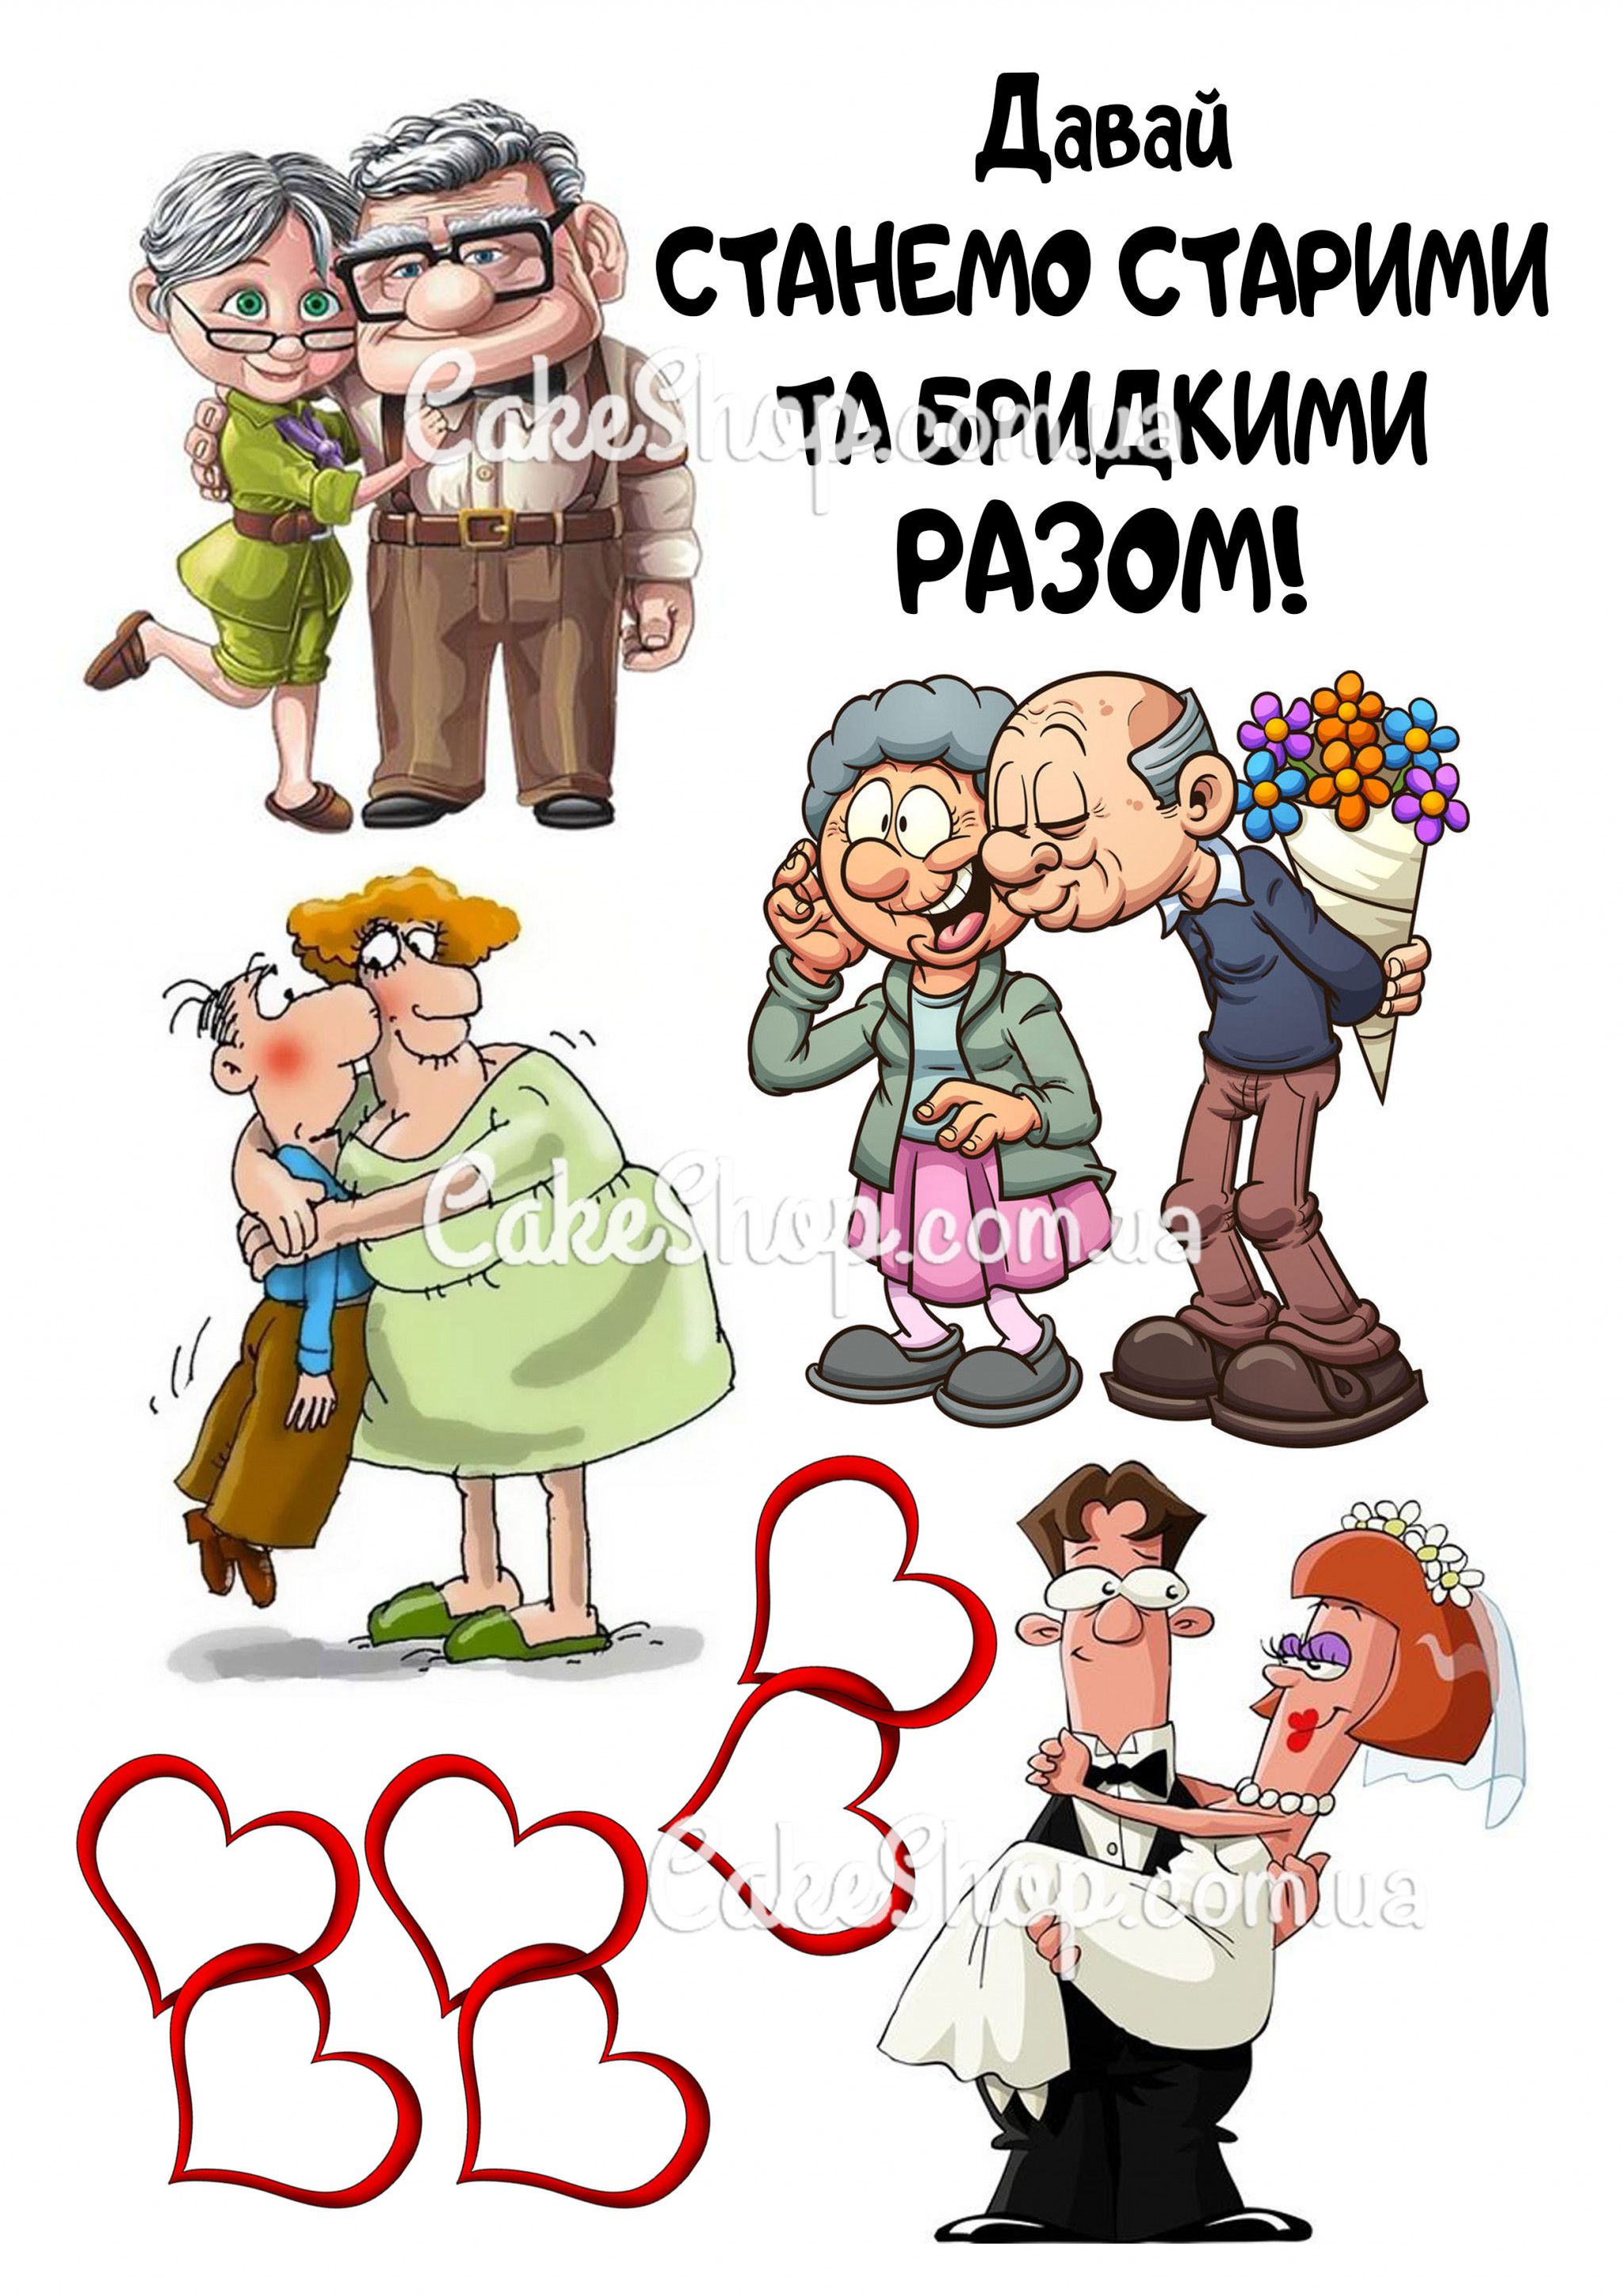 ⋗ Вафельная картинка  Дедушка бабушка купить в Украине ➛ CakeShop.com.ua, фото